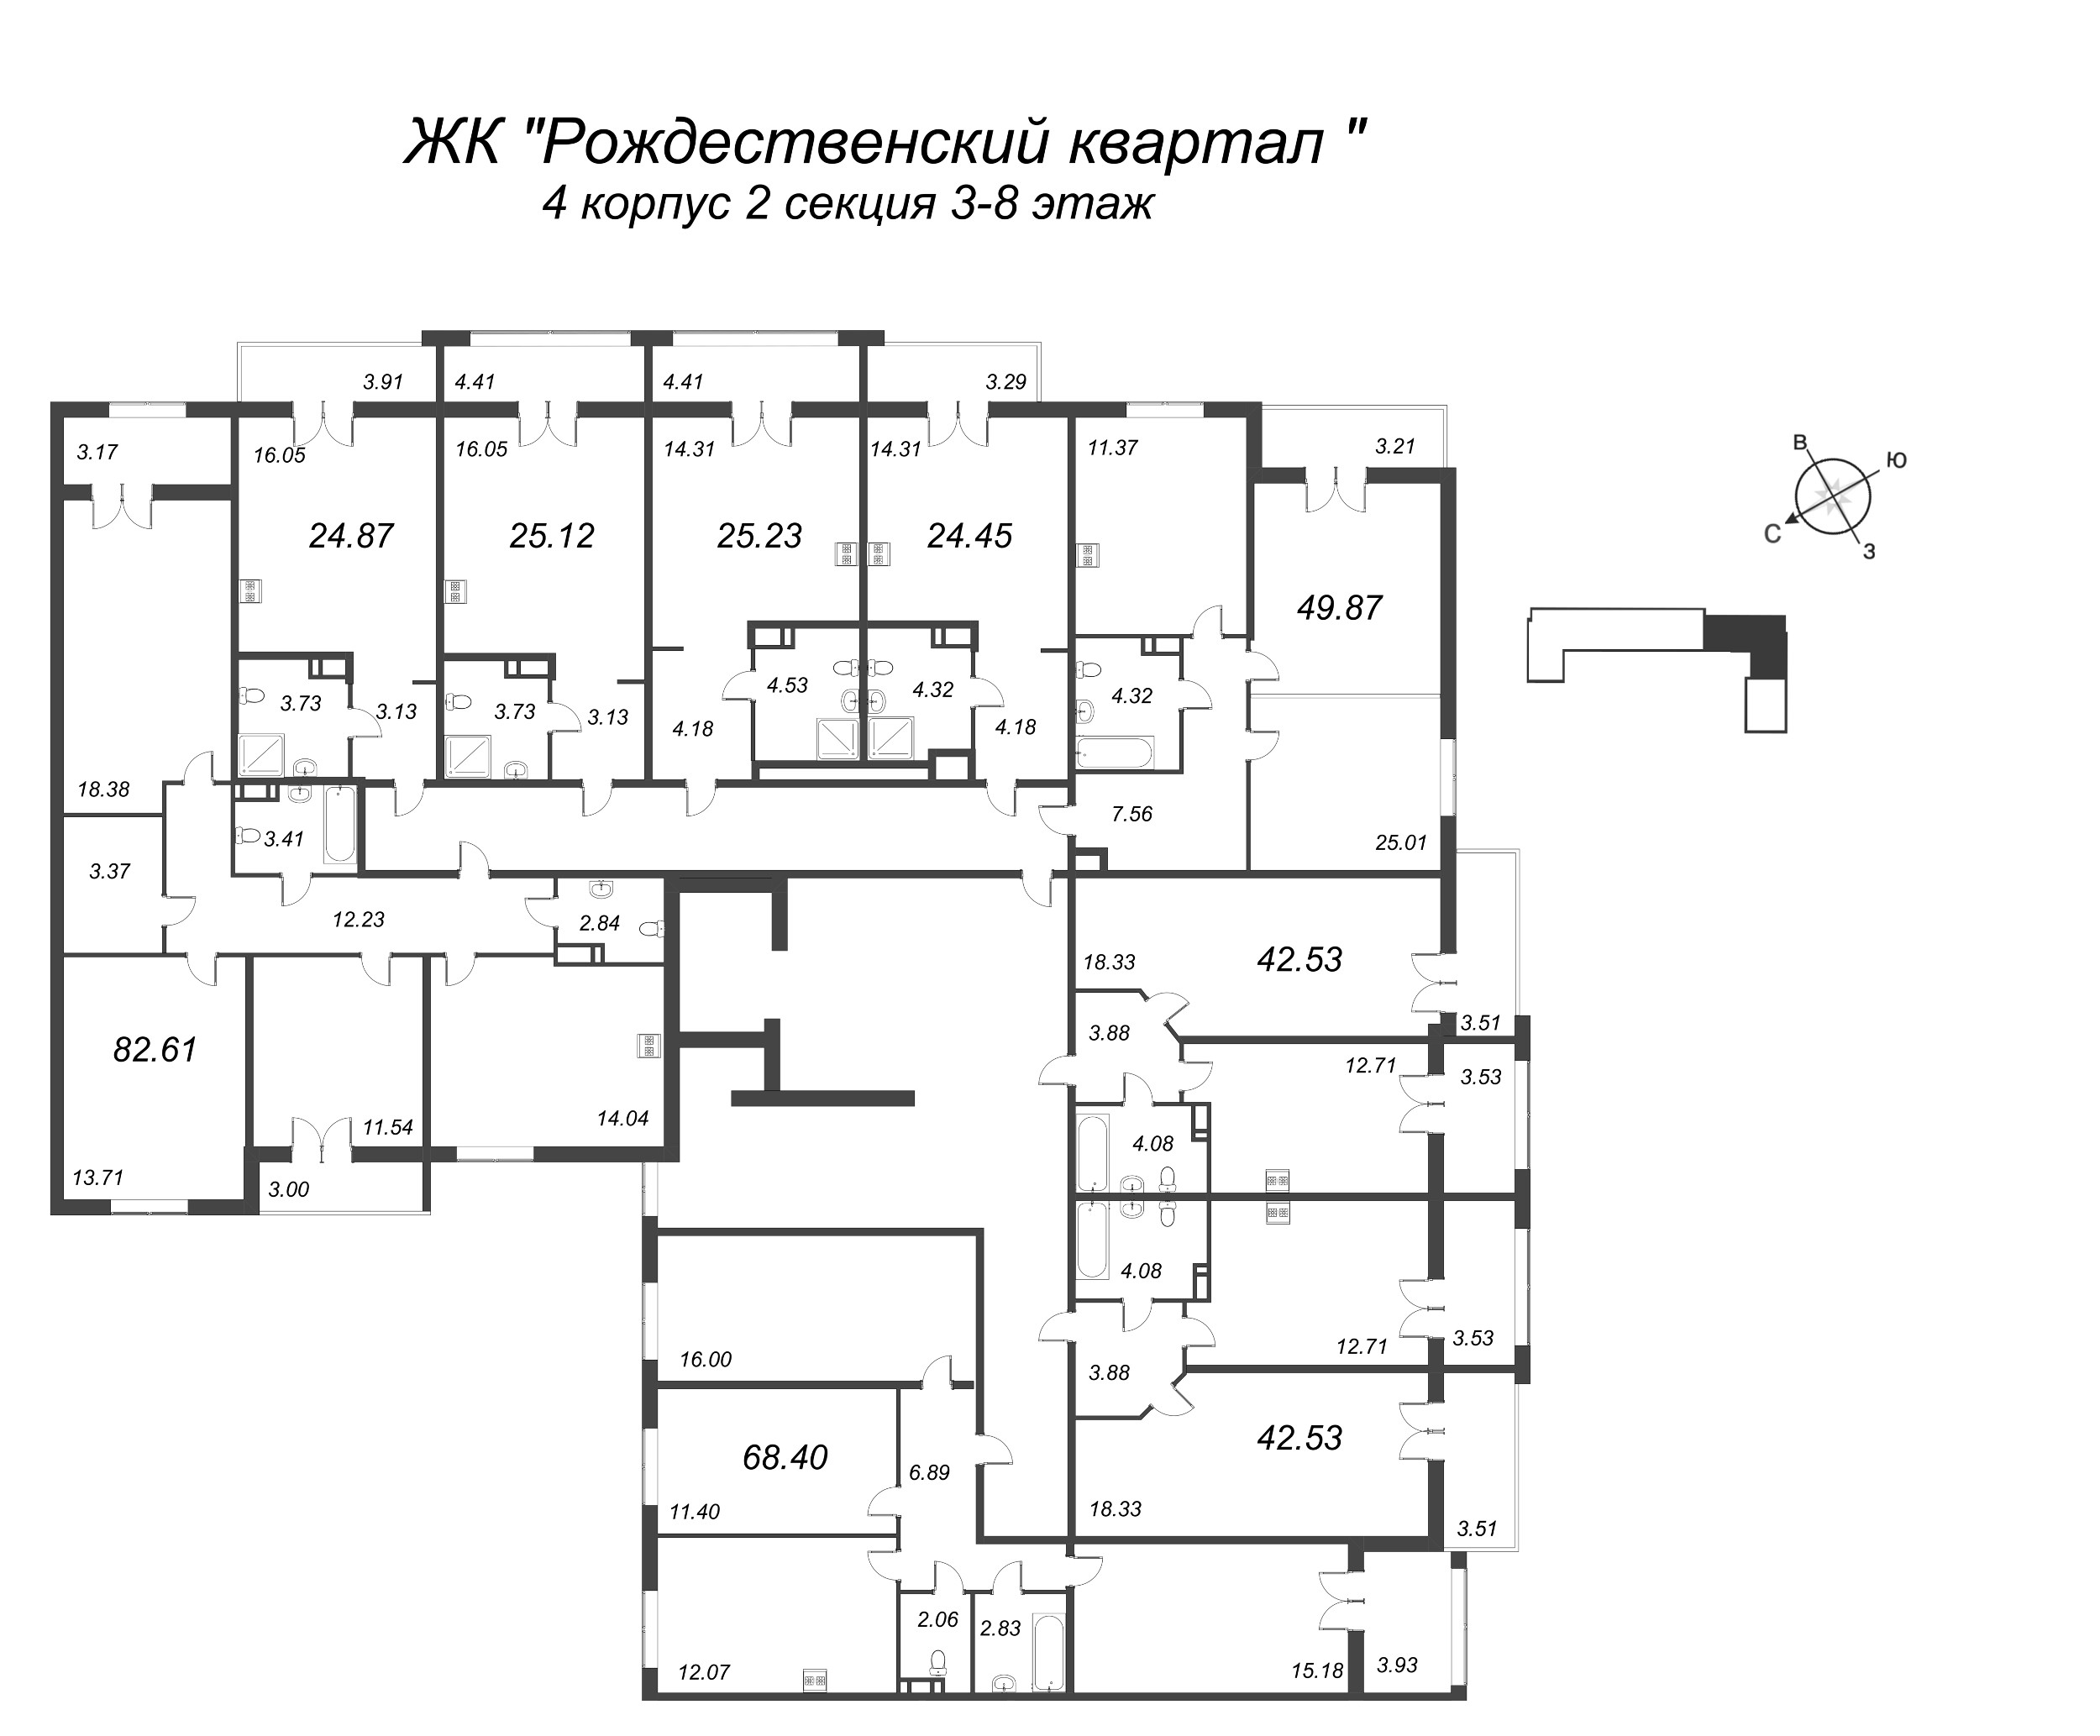 Квартира-студия, 24.45 м² в ЖК "Рождественский квартал" - планировка этажа